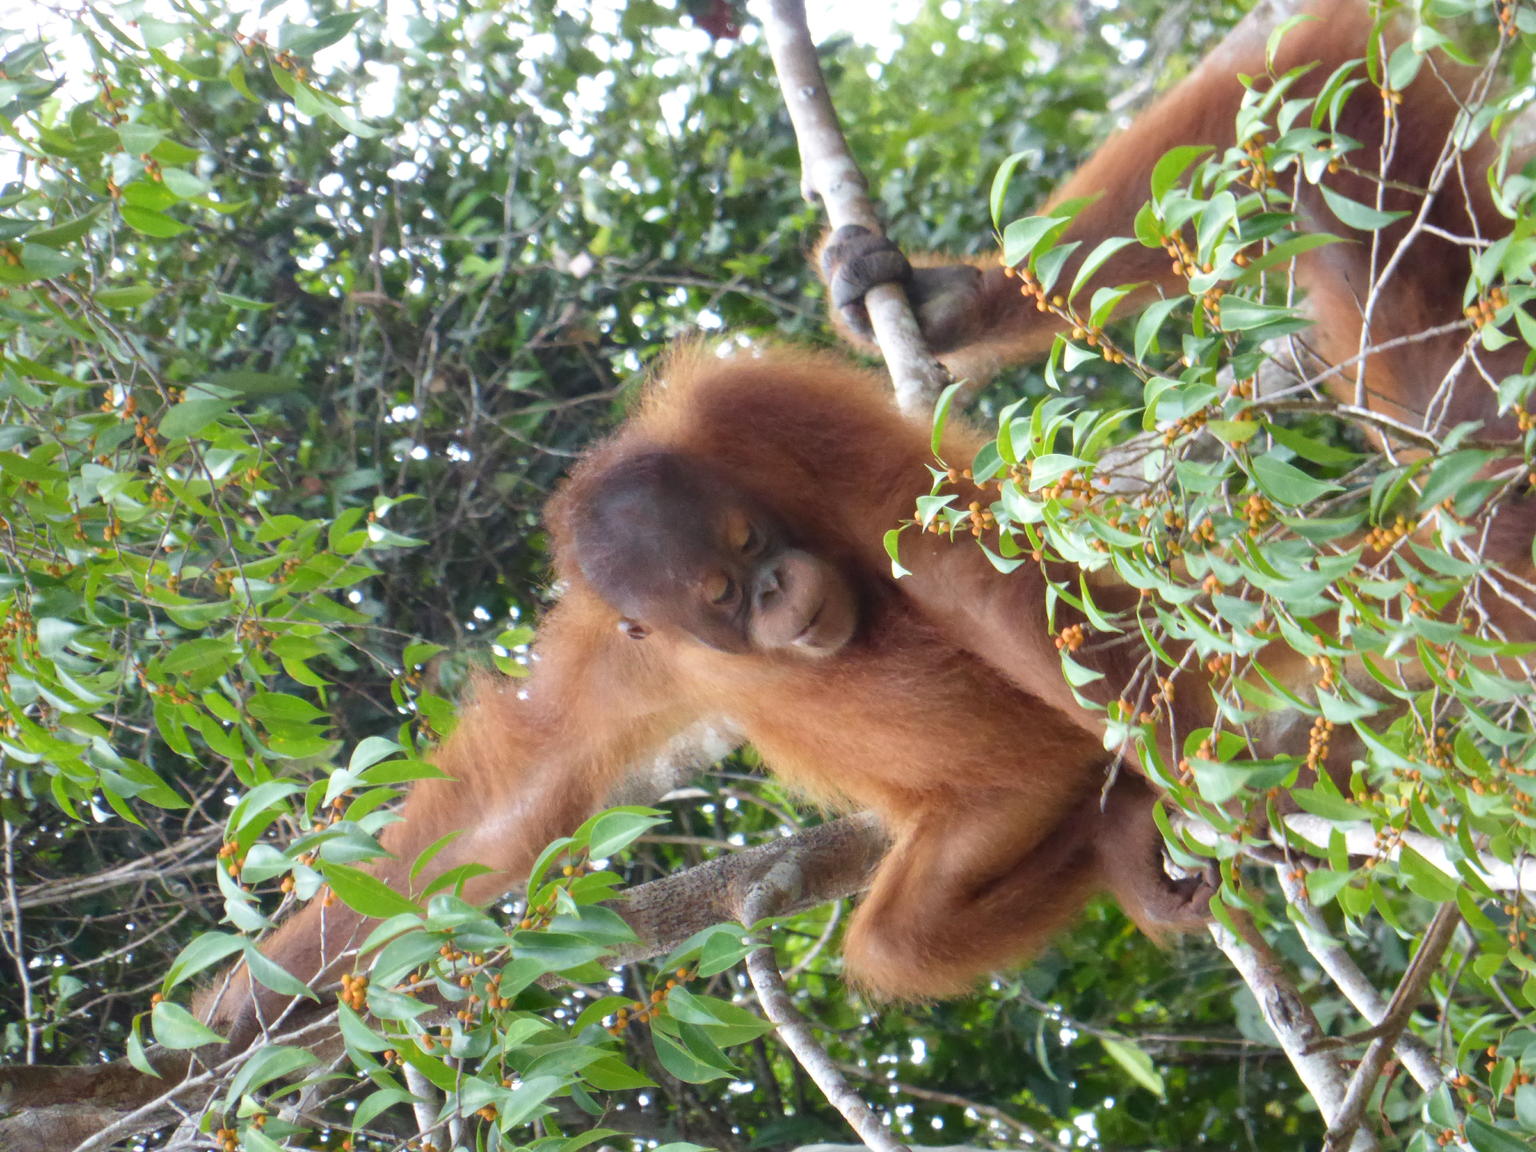 Baby orangutan at Semenggok